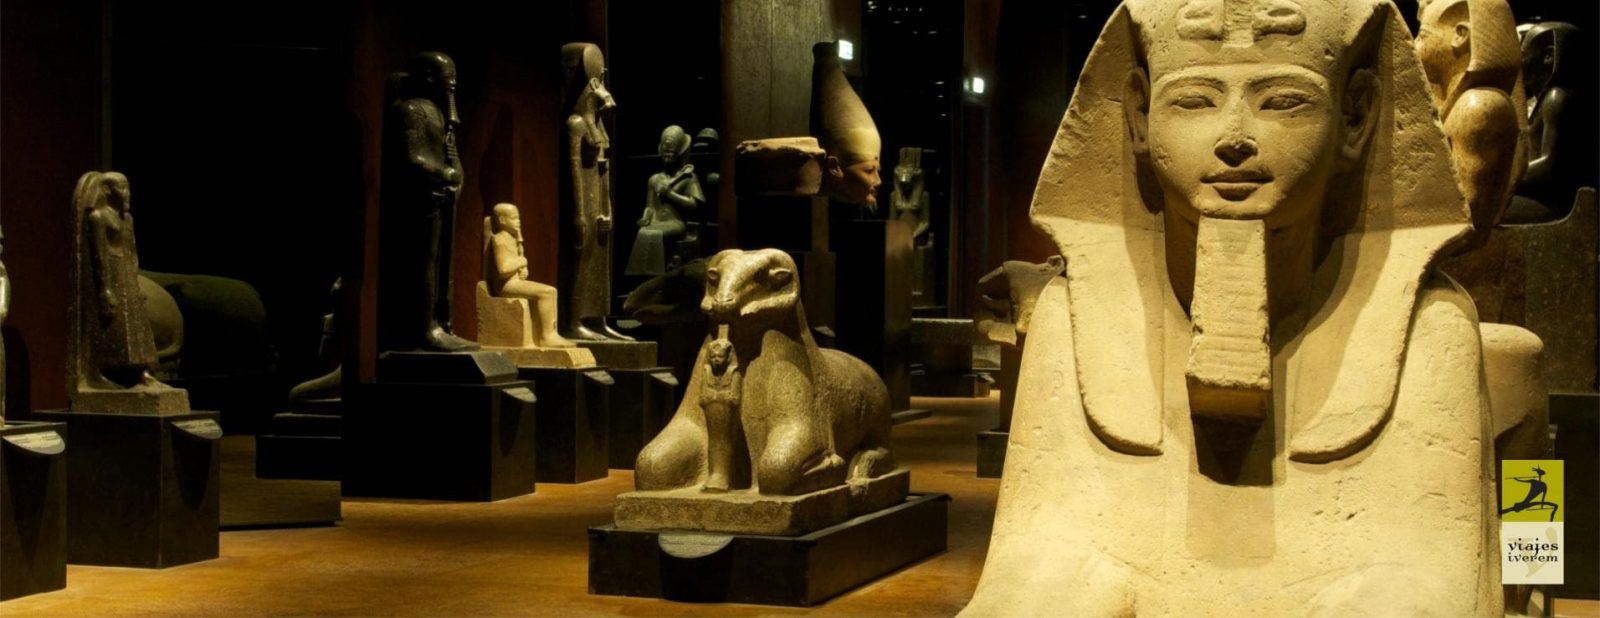 Viaje arqueológico Museo egipcio de Turín